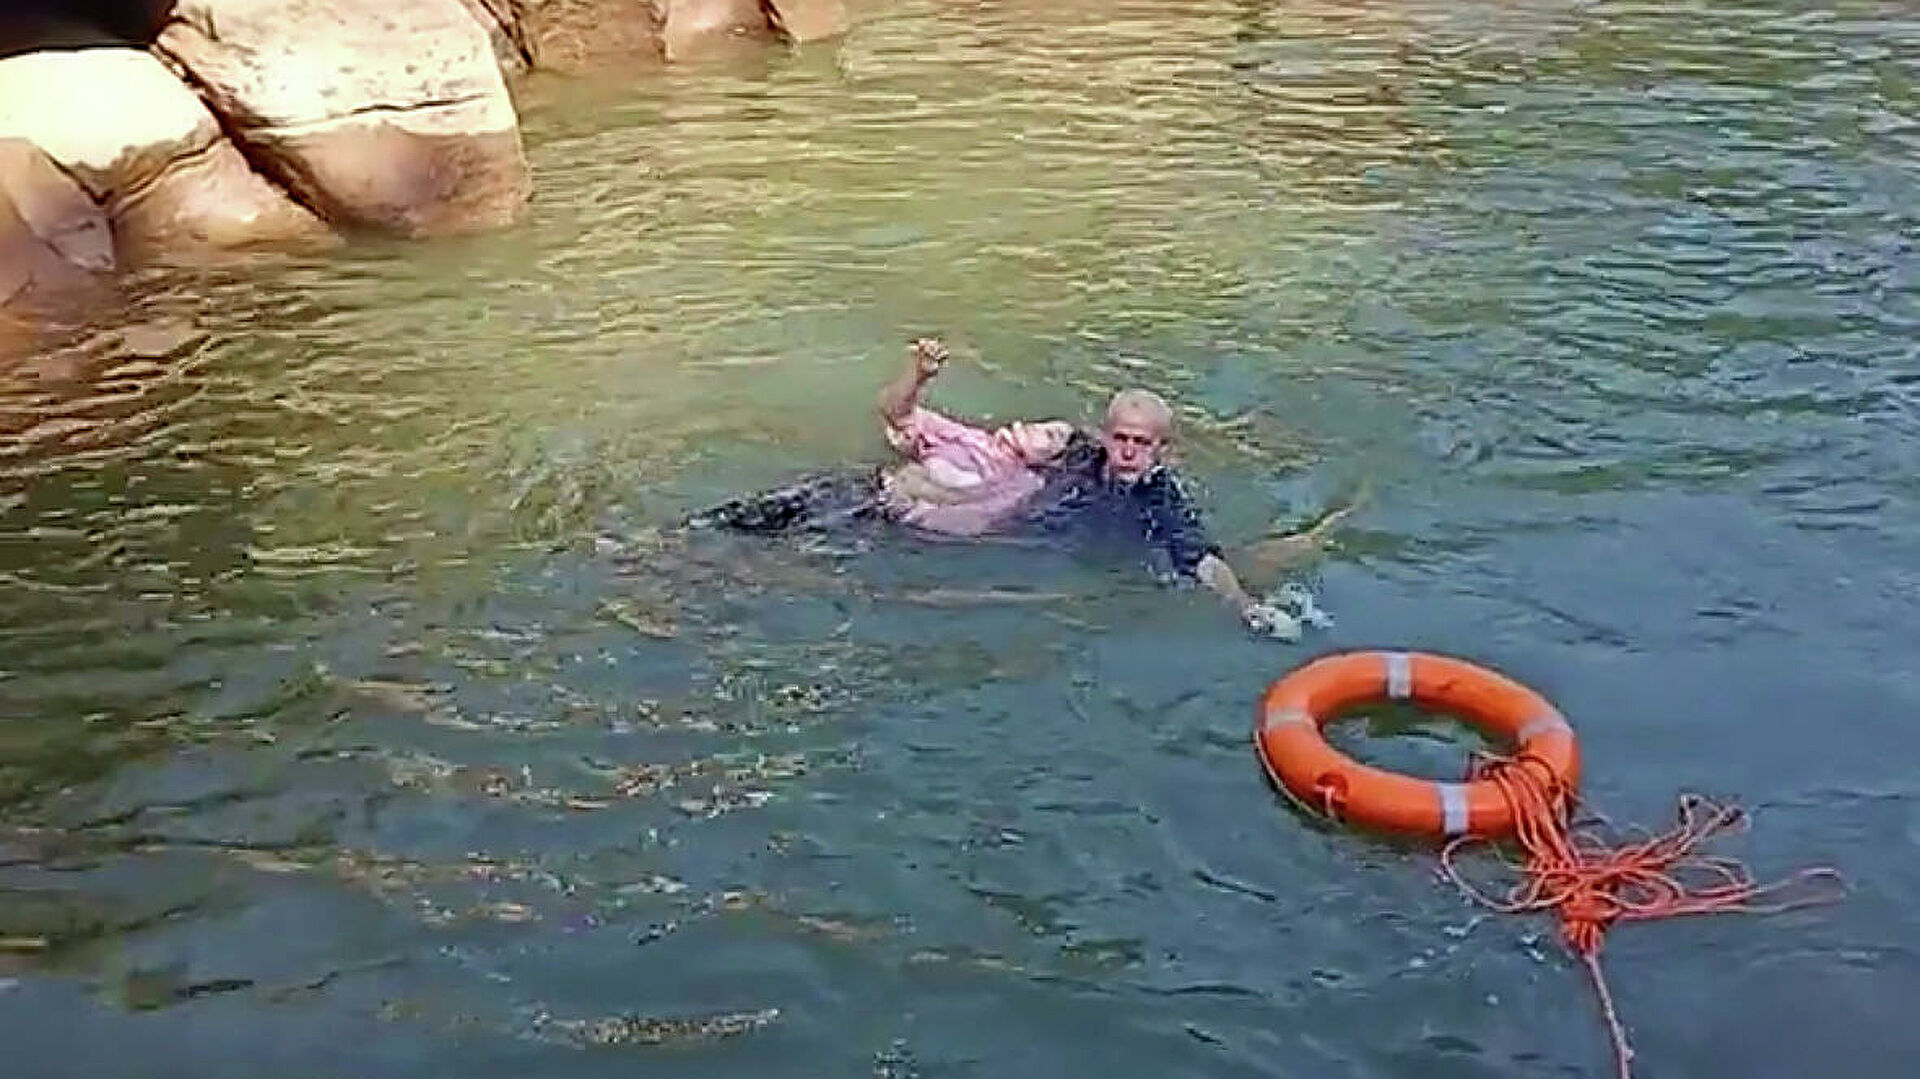 Высокопоставленный дипломат спас тонущую в реке девушку на глазах у толпы зевак - ВИДЕО